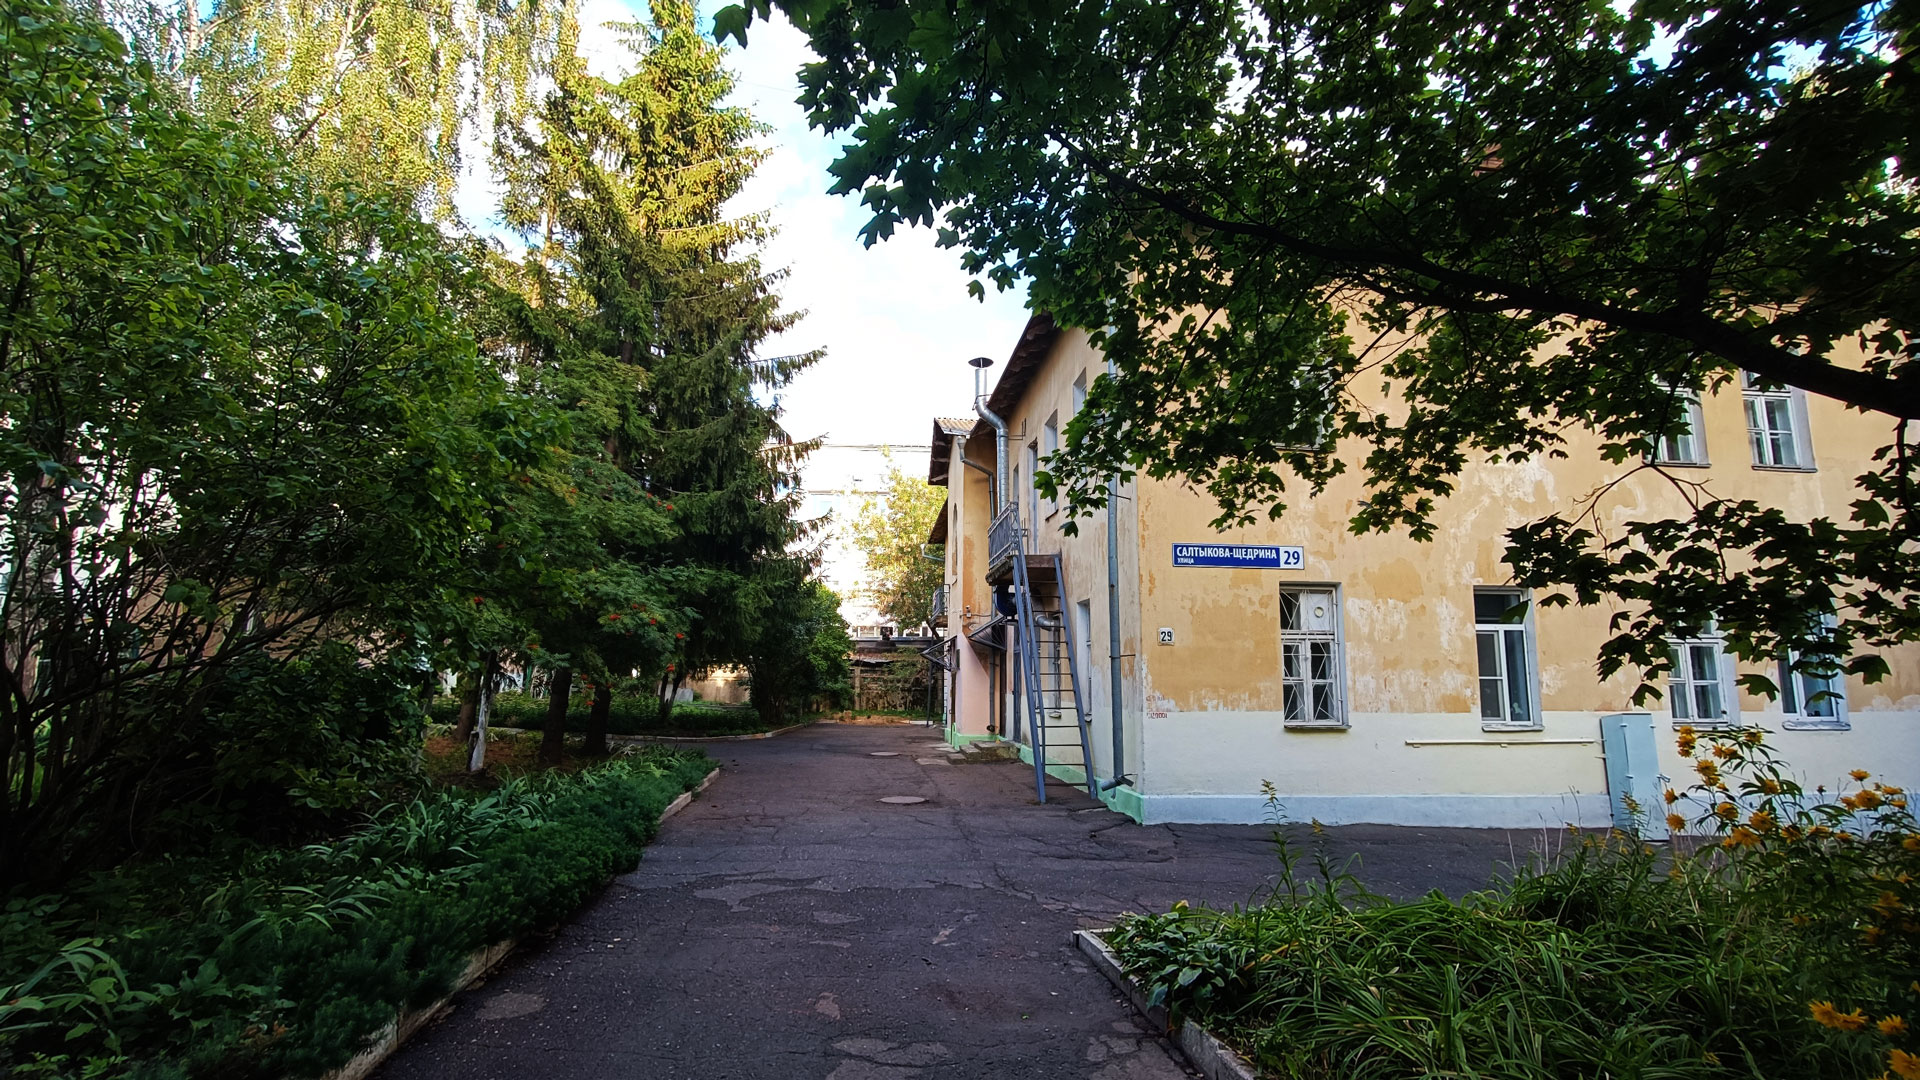 Детский сад 102 Ярославль: общий вид здания (ул. Салтыкова-Щедрина, 29).